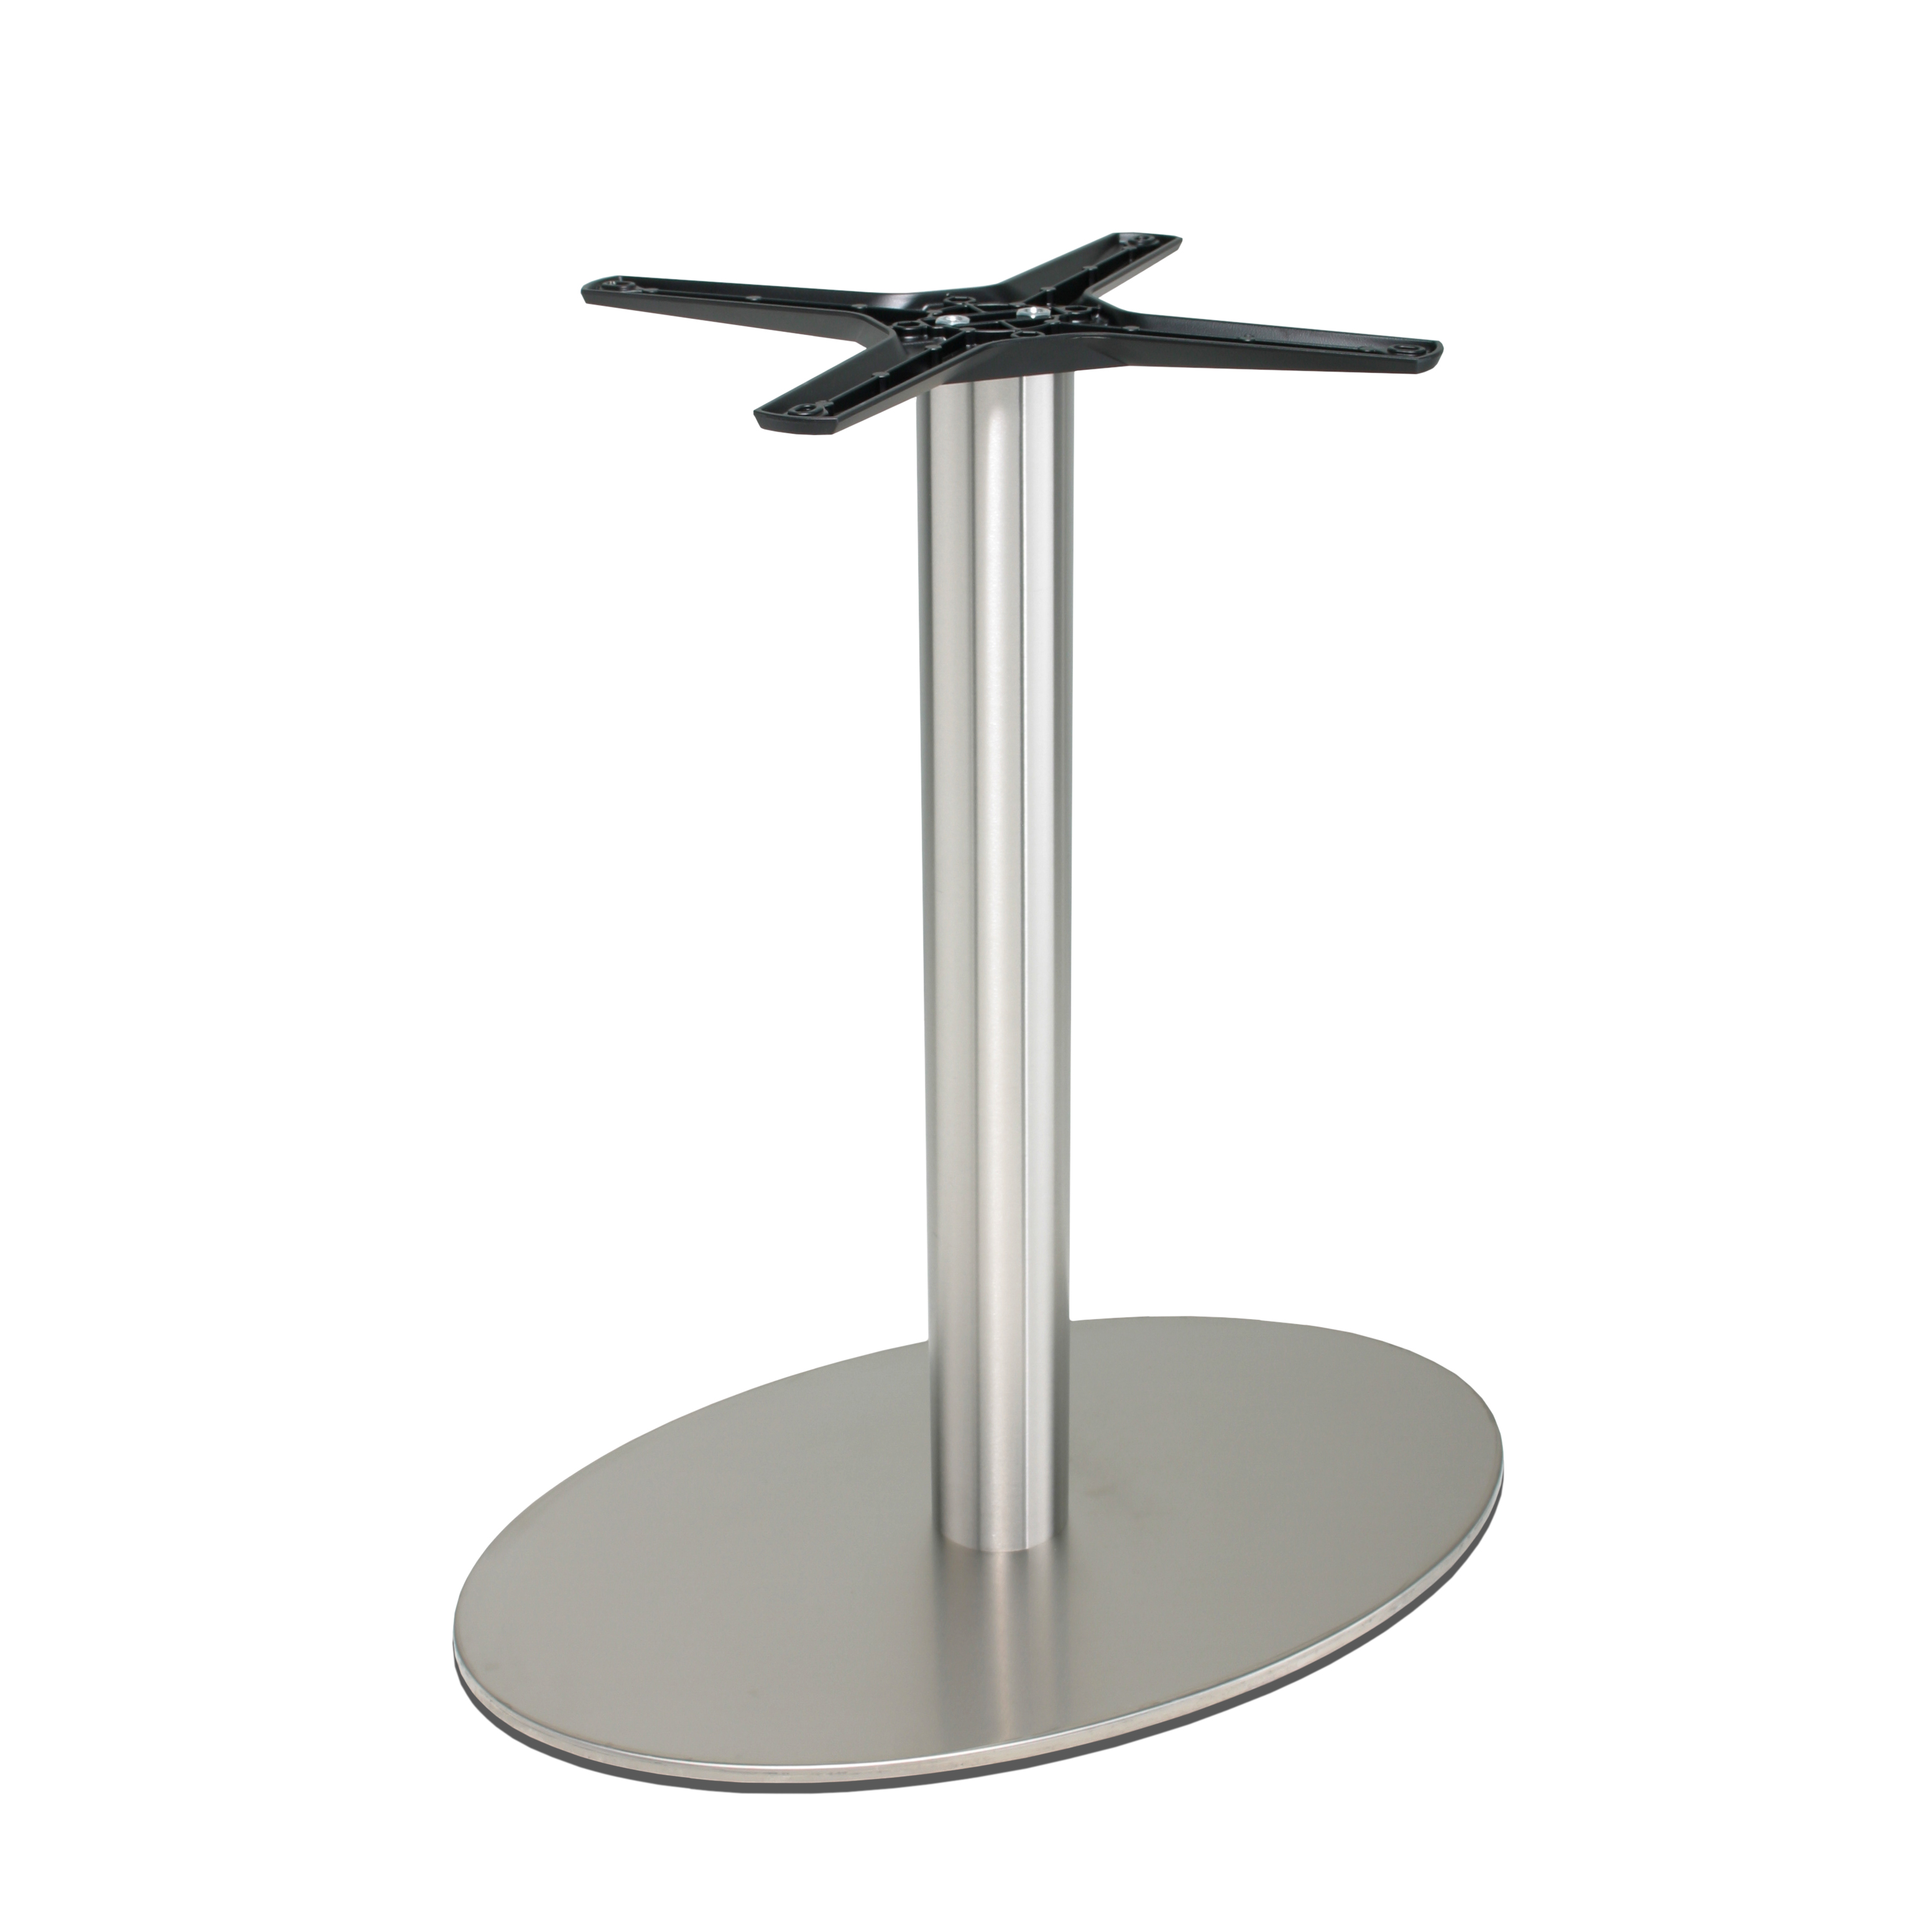 Tischgestell Edelstahl P501inox - rostfrei - satiniert - matt - ovale Bodenplatte